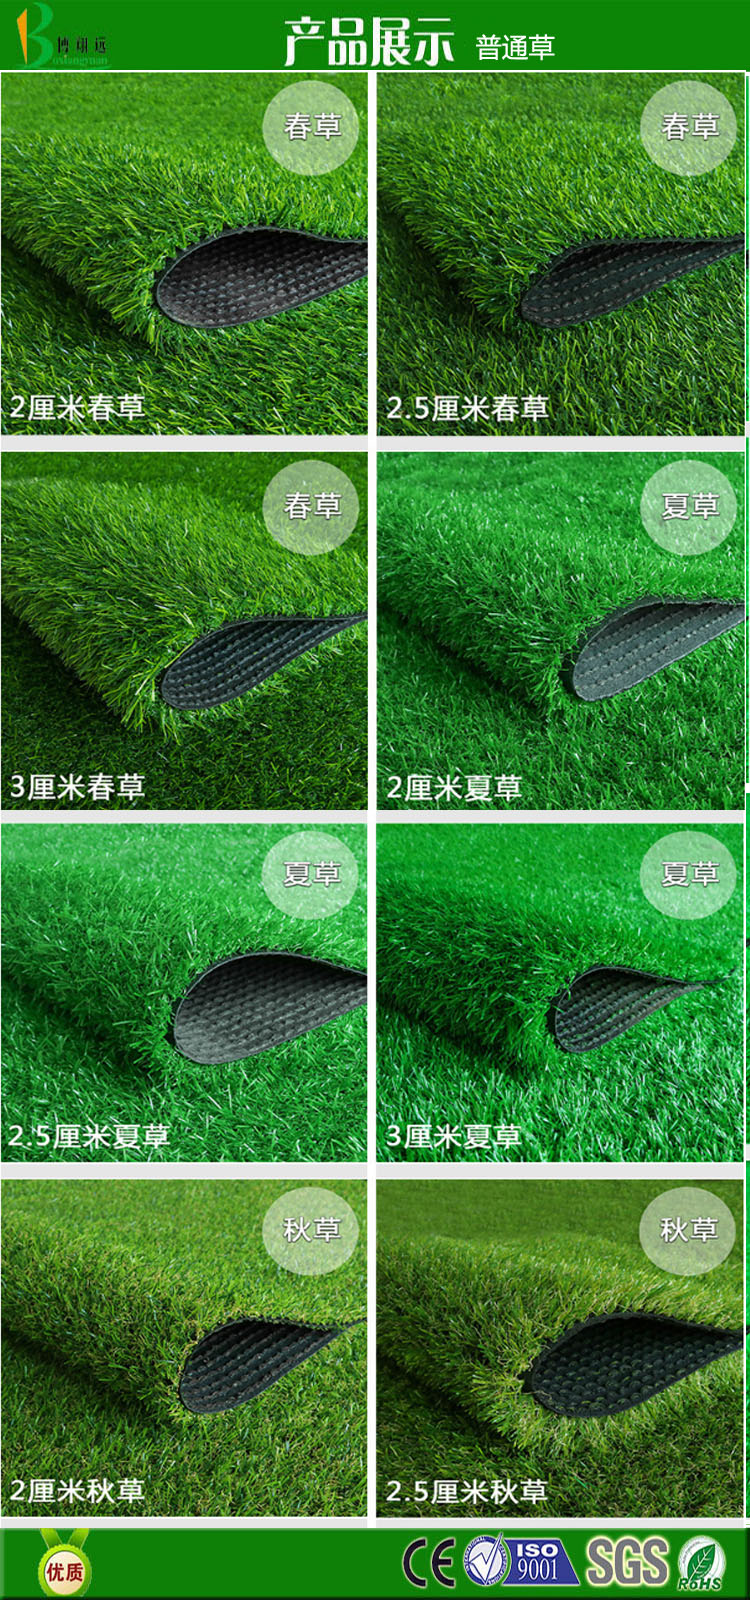 博翔远草坪厂家供应 人造草皮 优质足球场人造草皮 抗UV塑料草坪地毯示例图5